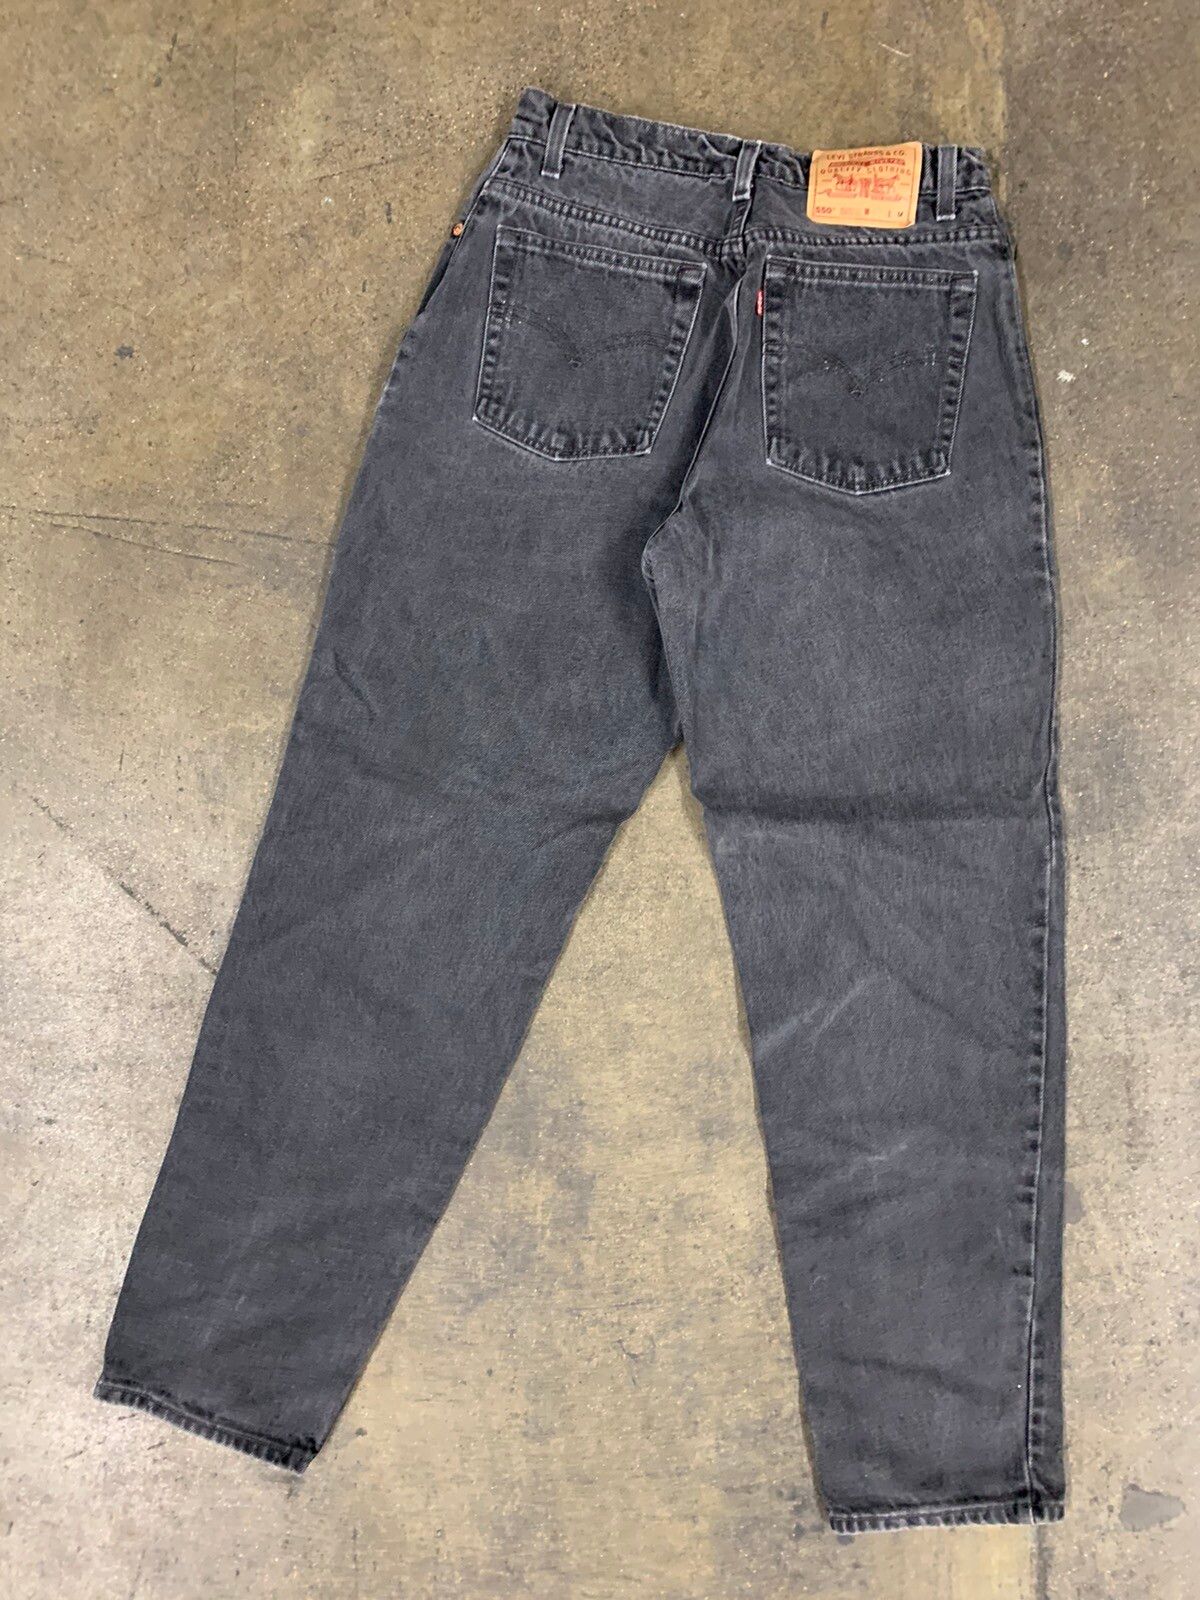 Vintage Vintage 1990s Levi’s 550 Black Jeans Size US 28 / EU 44 - 6 Thumbnail